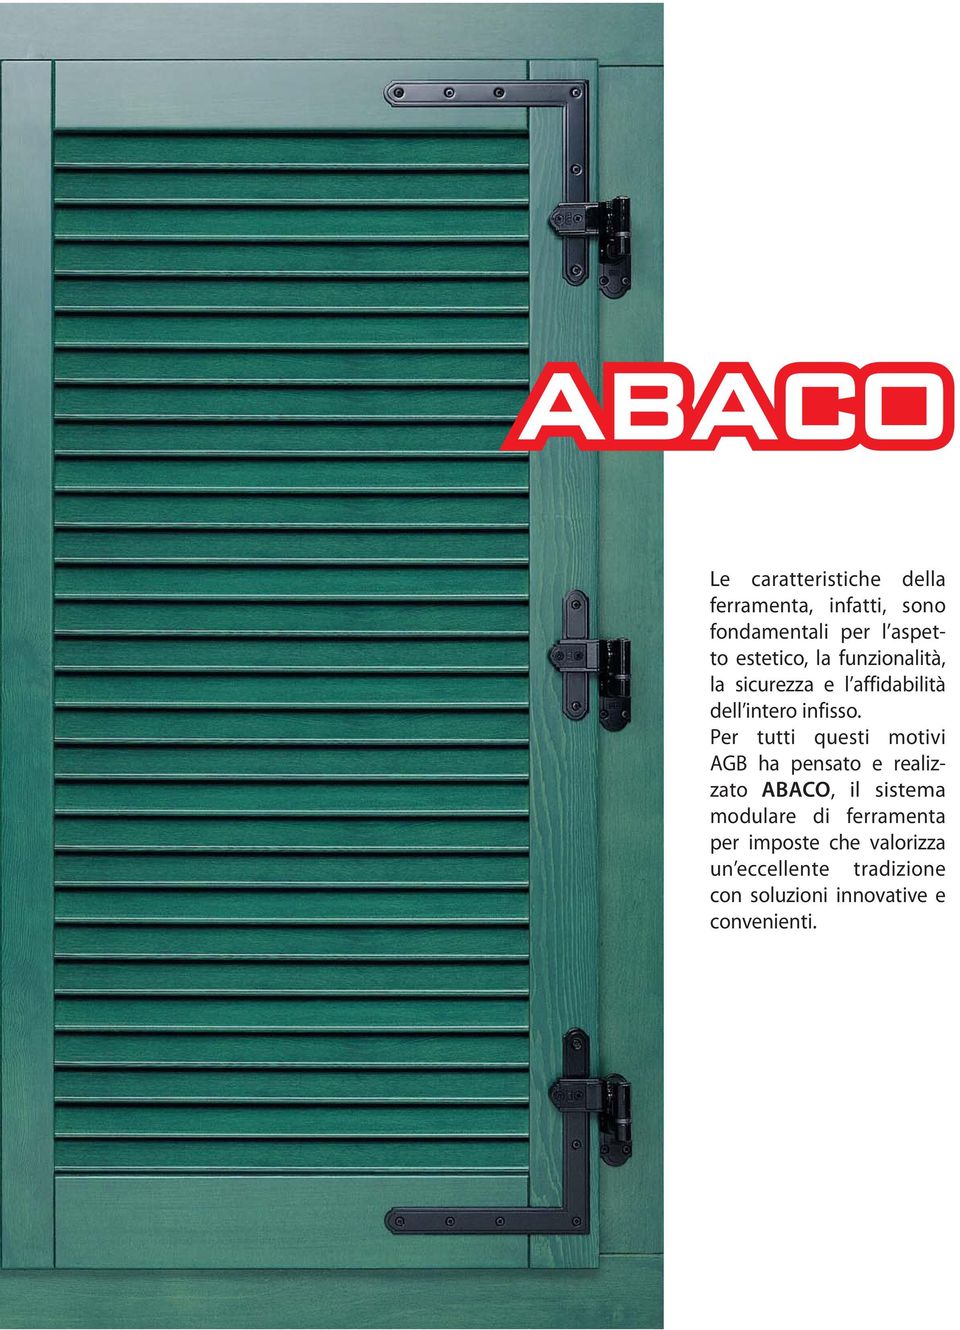 Per tutti questi motivi AGB ha pensato e realizzato ABACO, il sistema modulare di